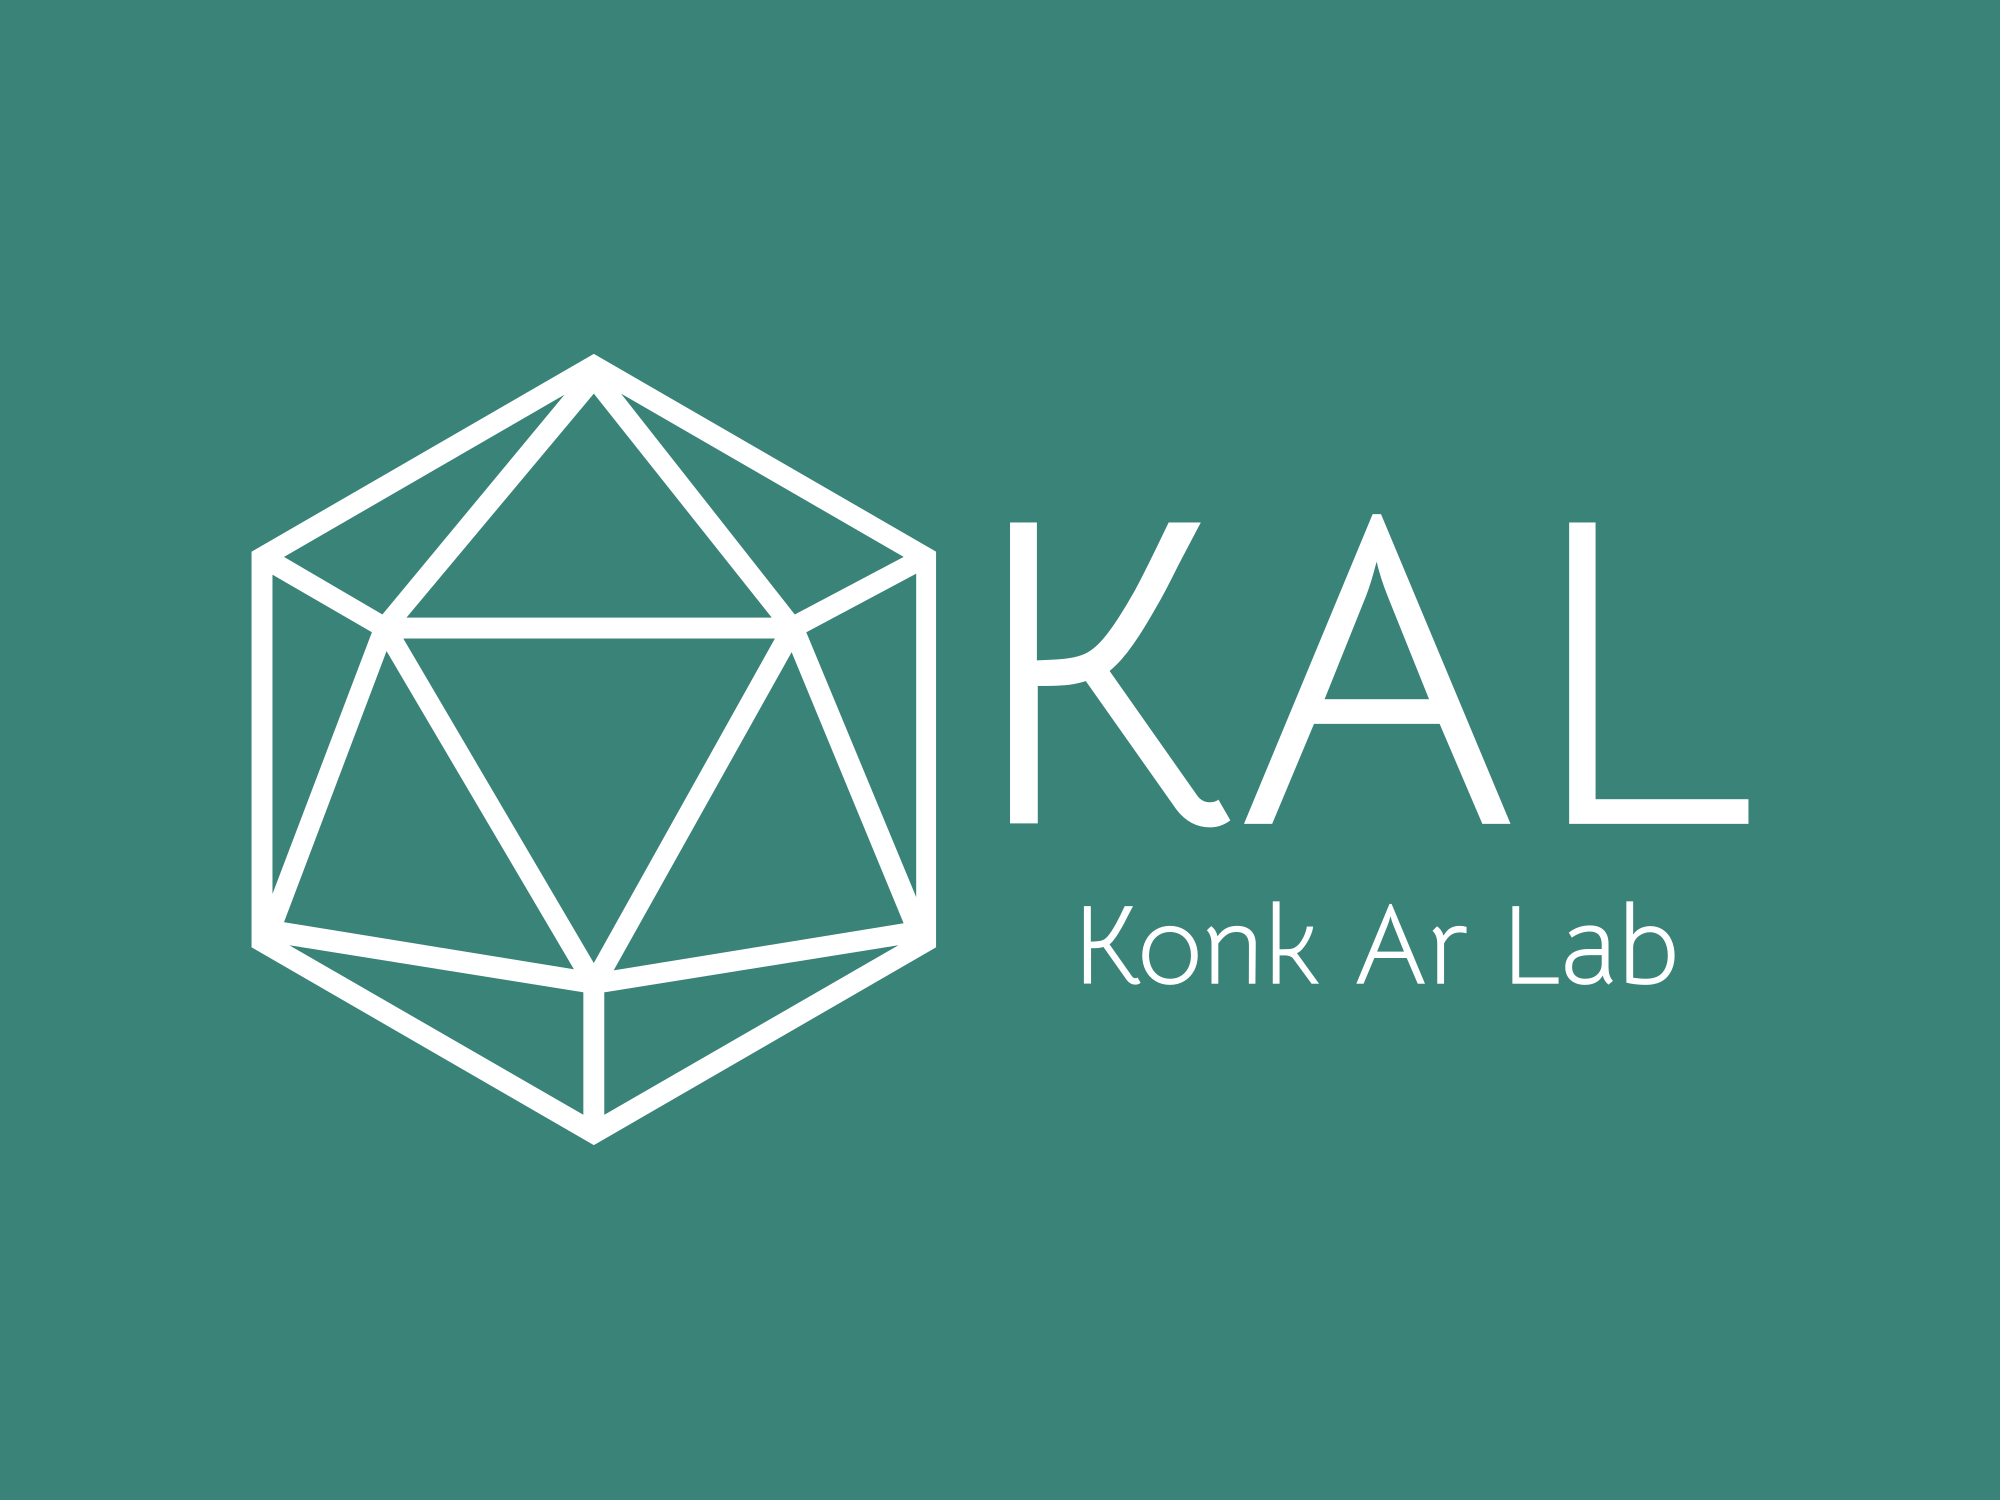 Group-Konk Ar Lab kal-high-resolution-color-logo 3 .png